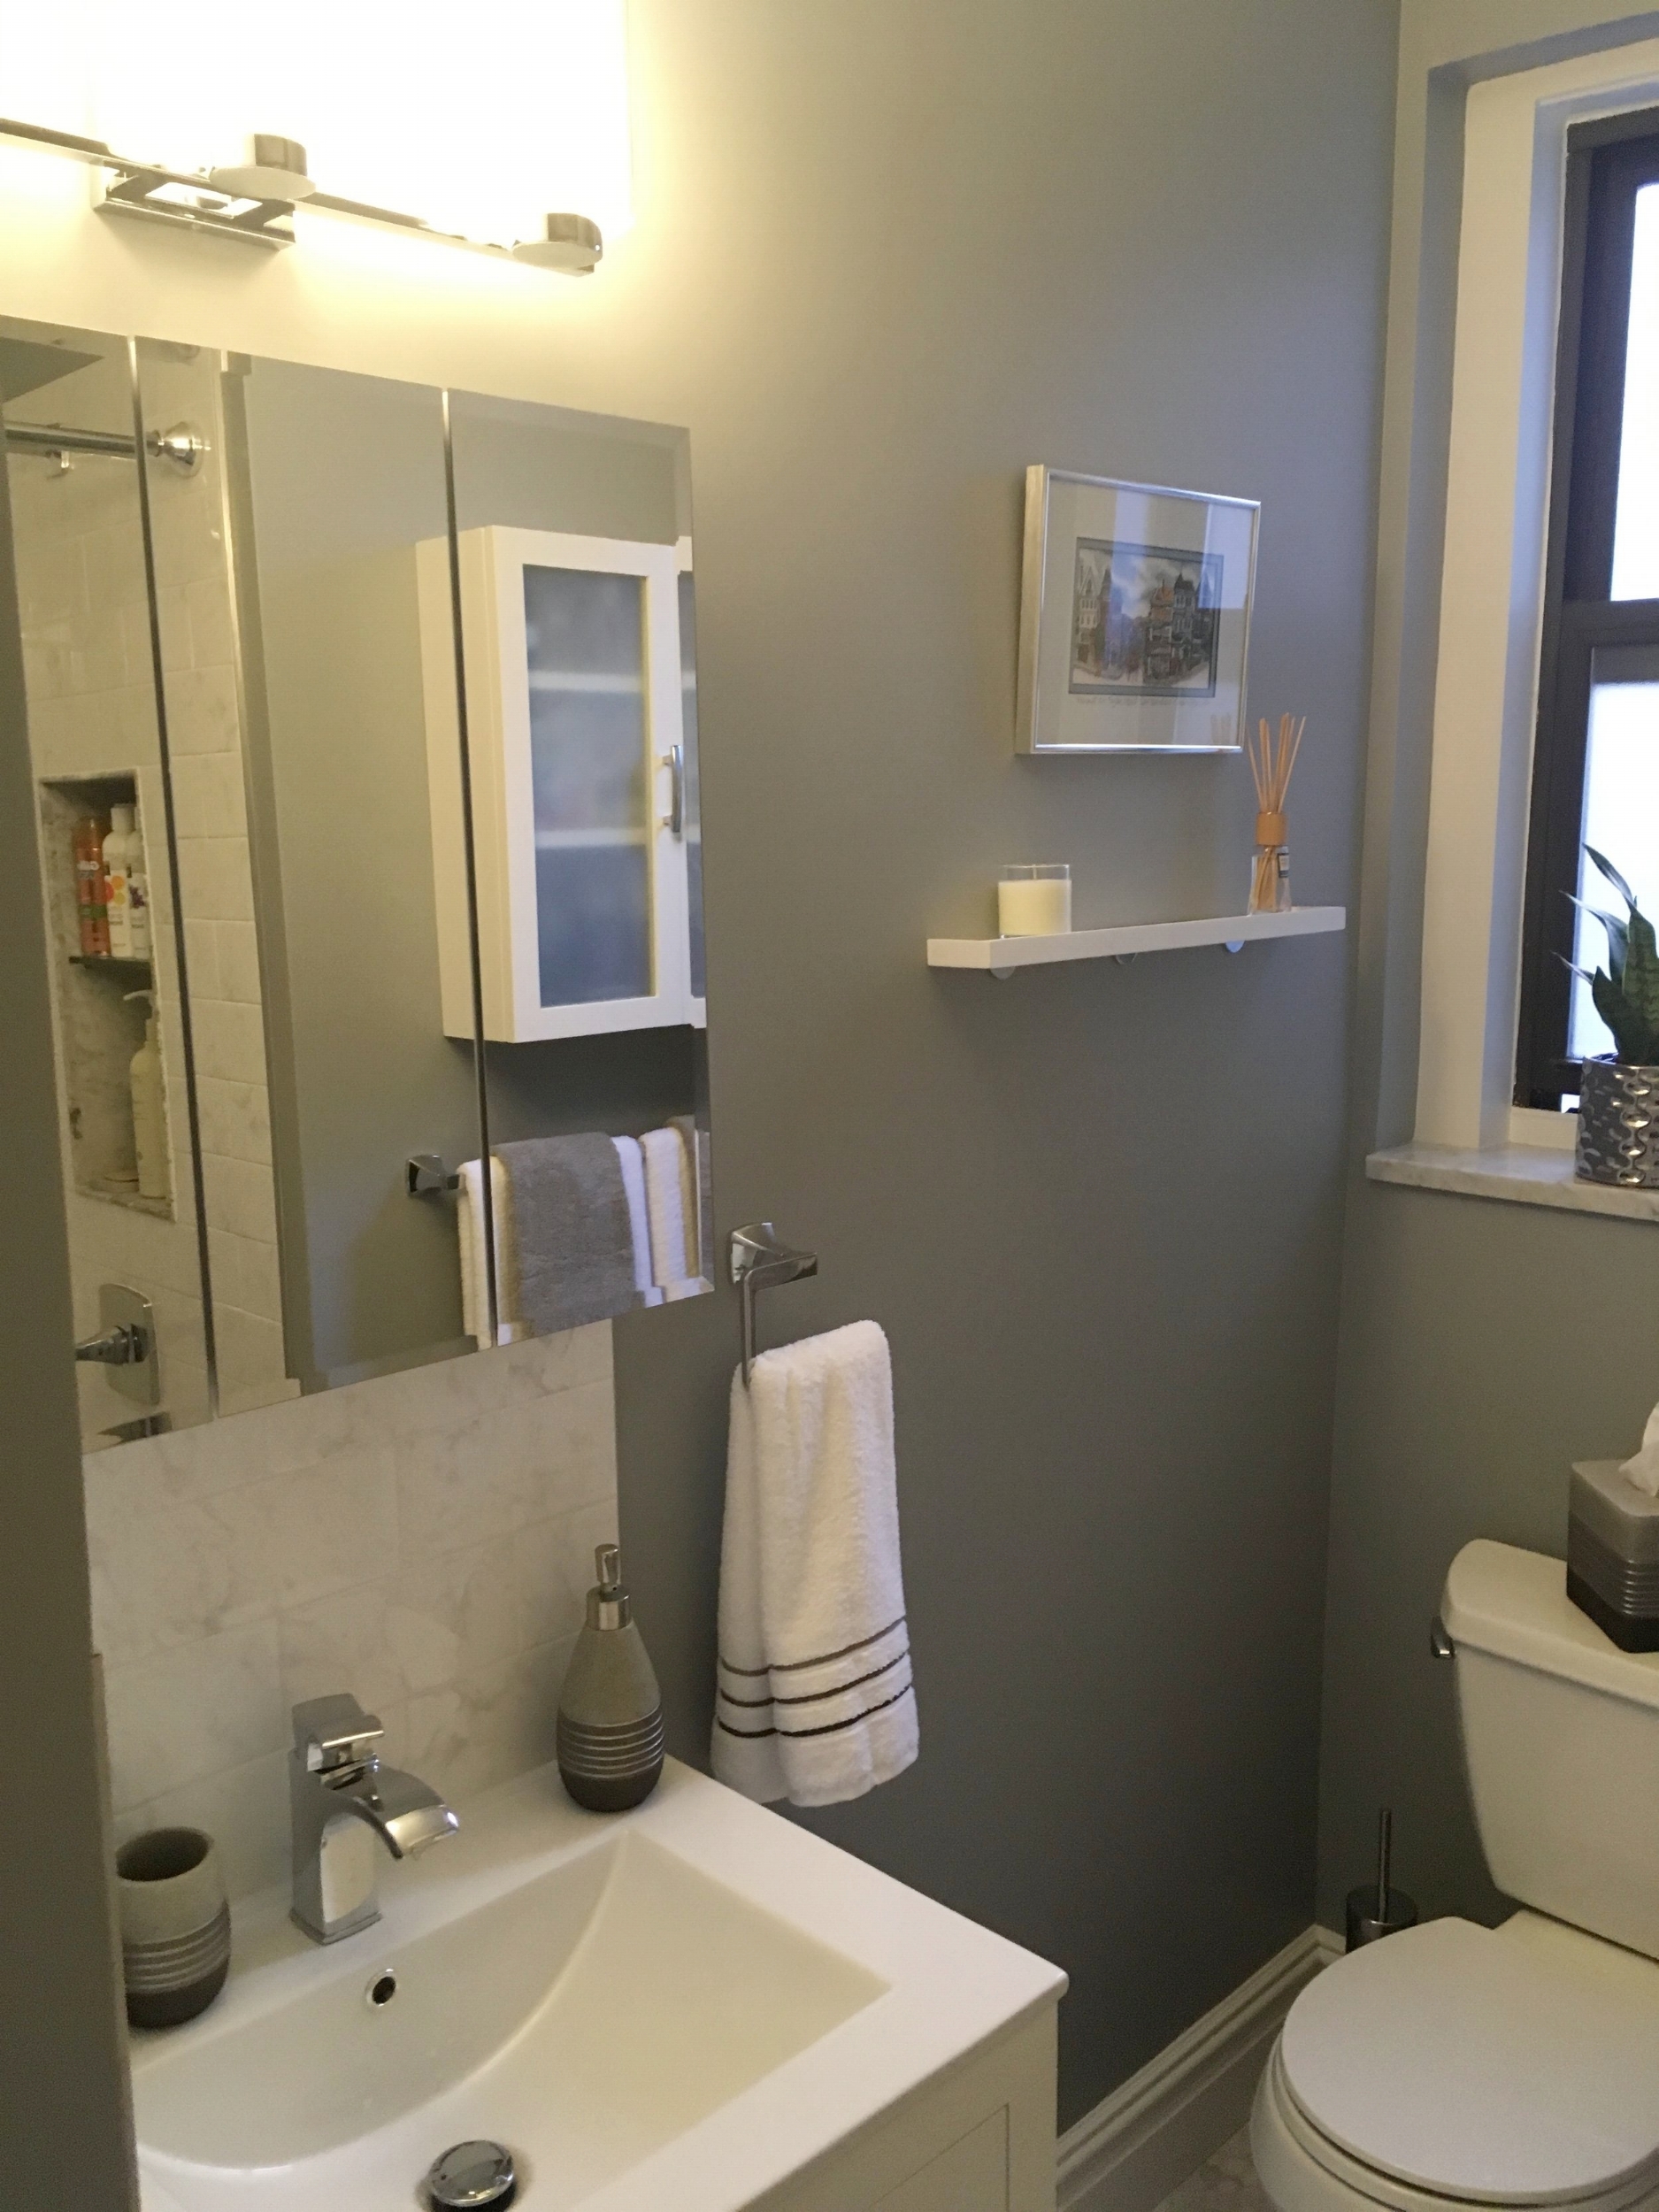 BUILDINWOOD Inwood Bathroom Remodel